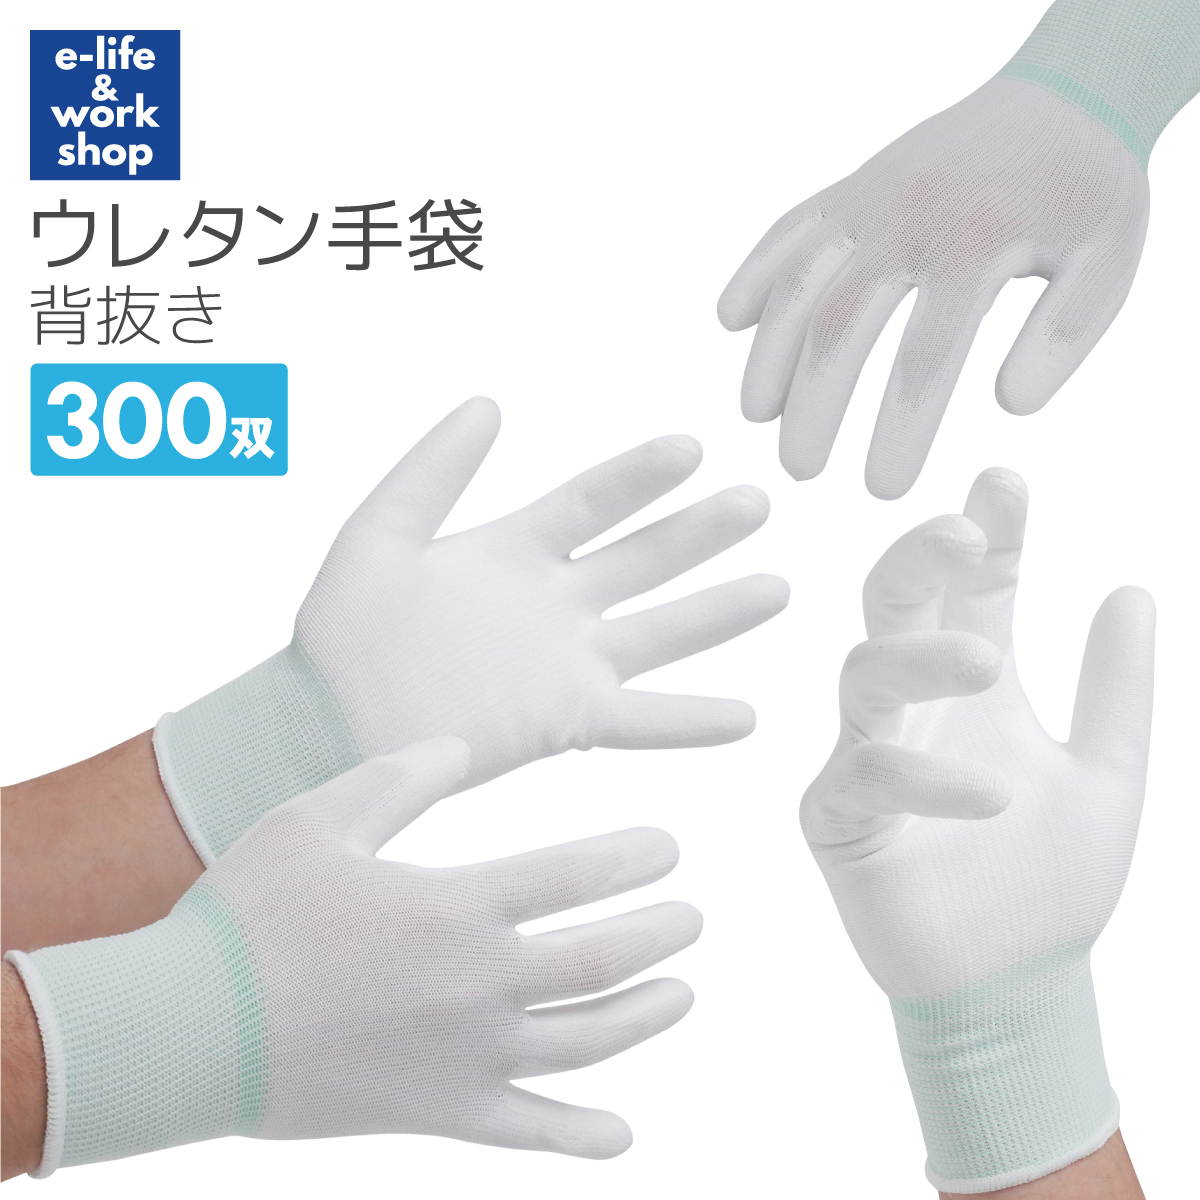 ウレタン 背抜き手袋 300双 PUコーティング ホワイト 手の平コーティング 大量 まとめ買い 作業手袋 工場 フィット 梱包 すべり止め ウレタン手袋